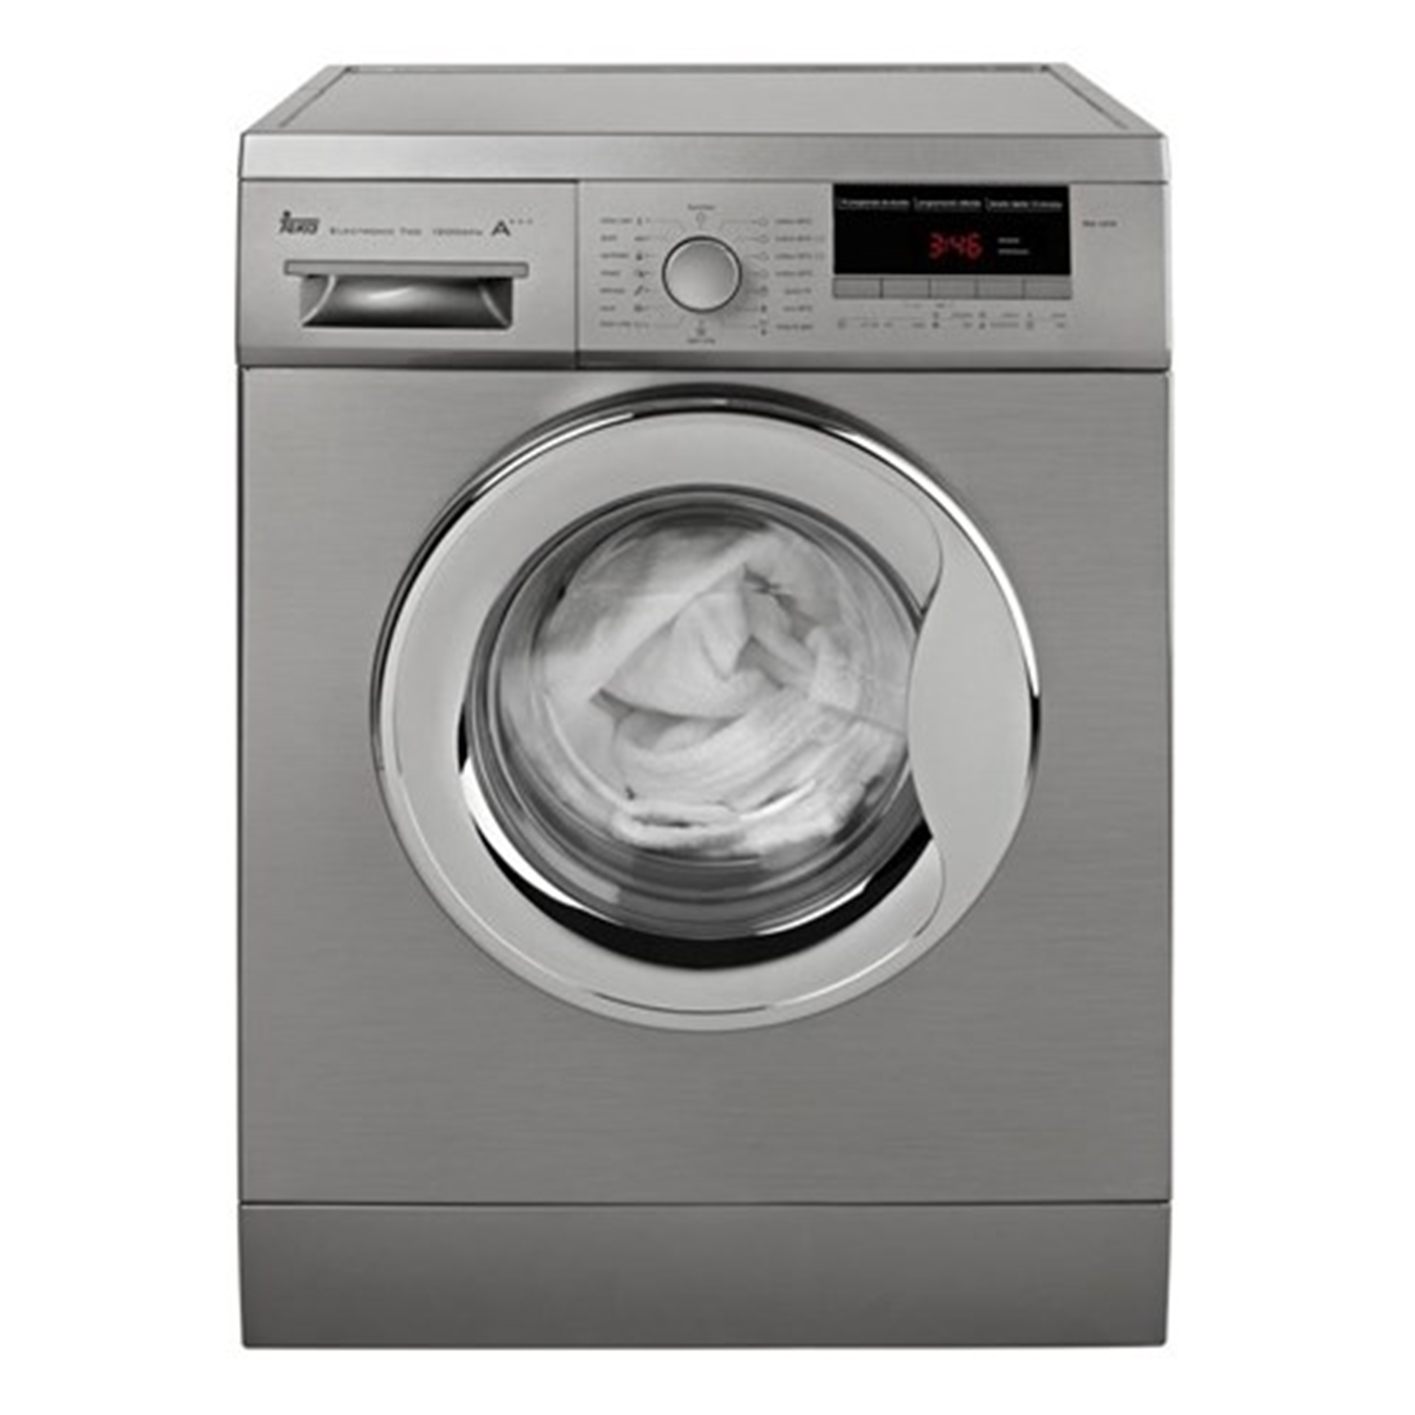 Hình ảnh của Máy giặt Teka TK4 1270